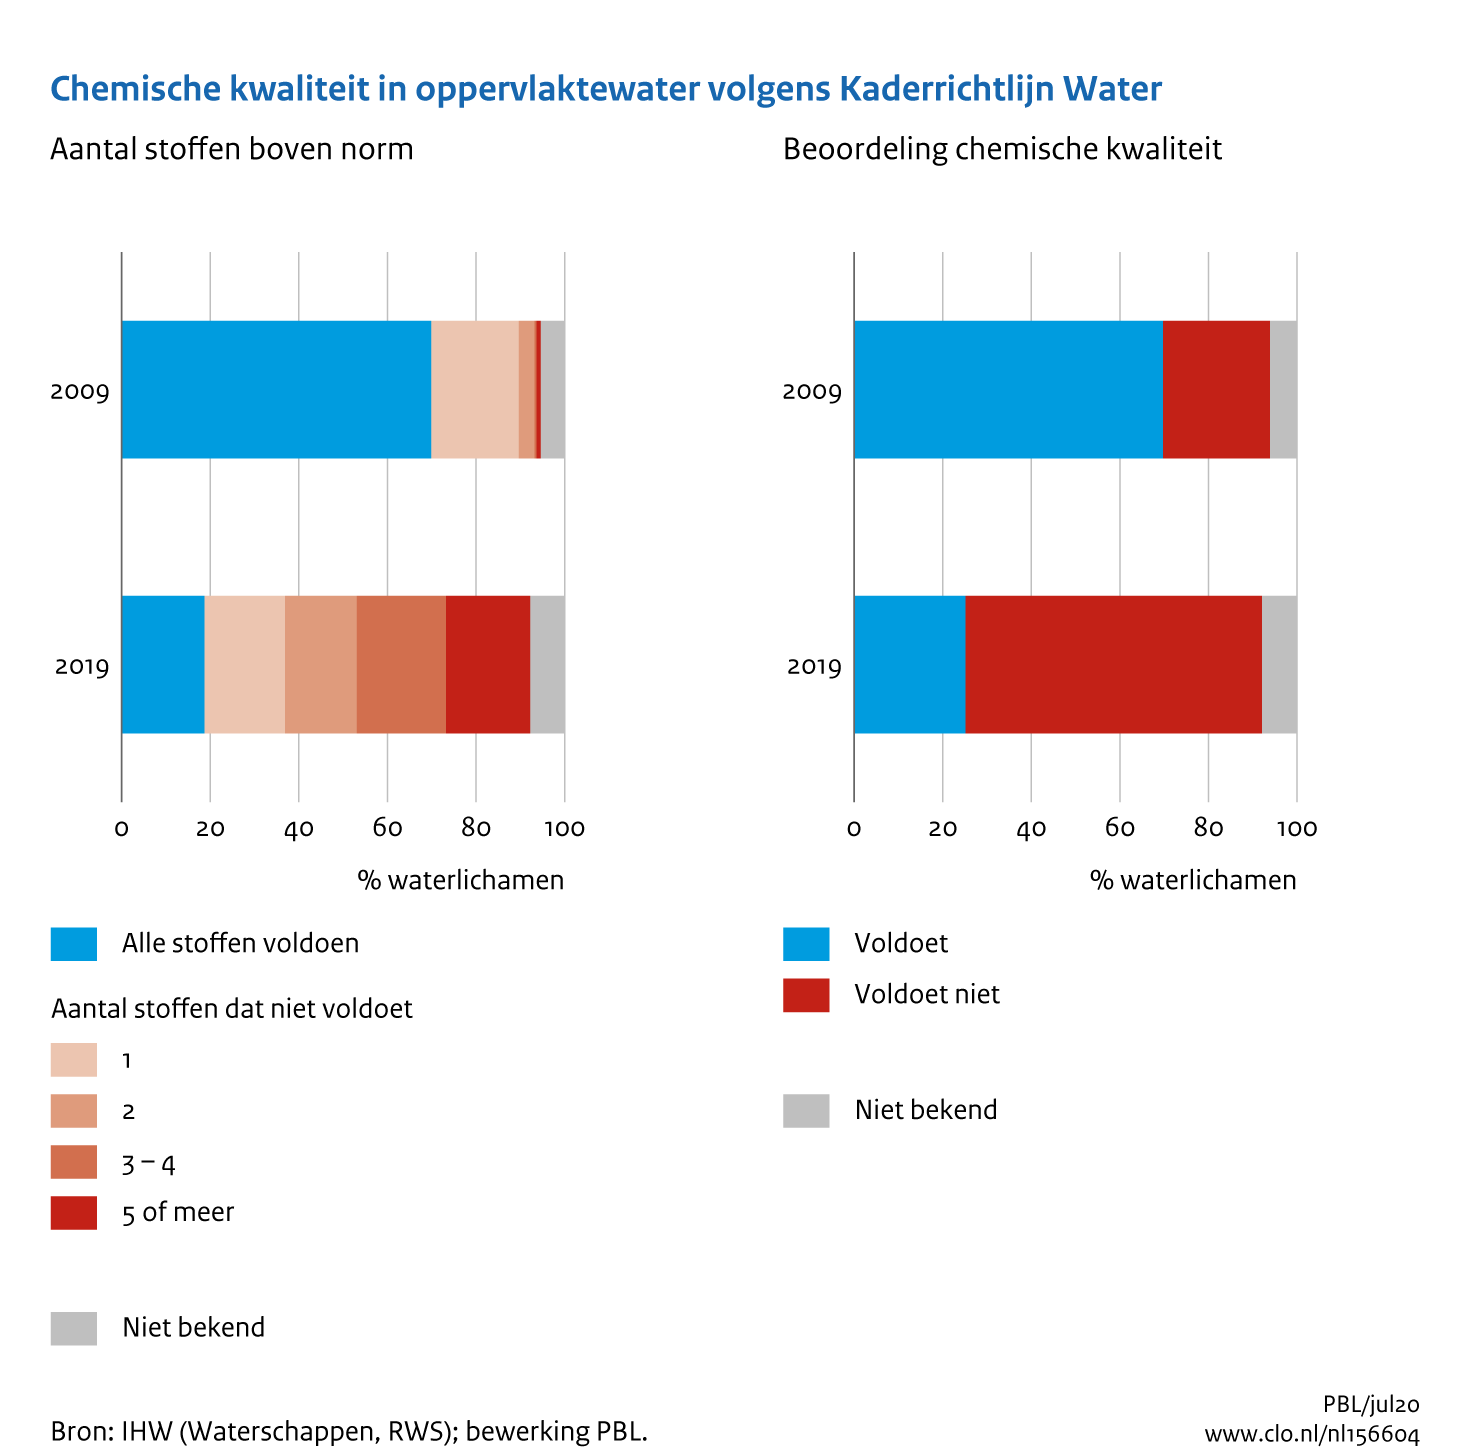 Figuur Chemische waterkwaliteit volgens Kaderrichtlijn water. In de rest van de tekst wordt deze figuur uitgebreider uitgelegd.